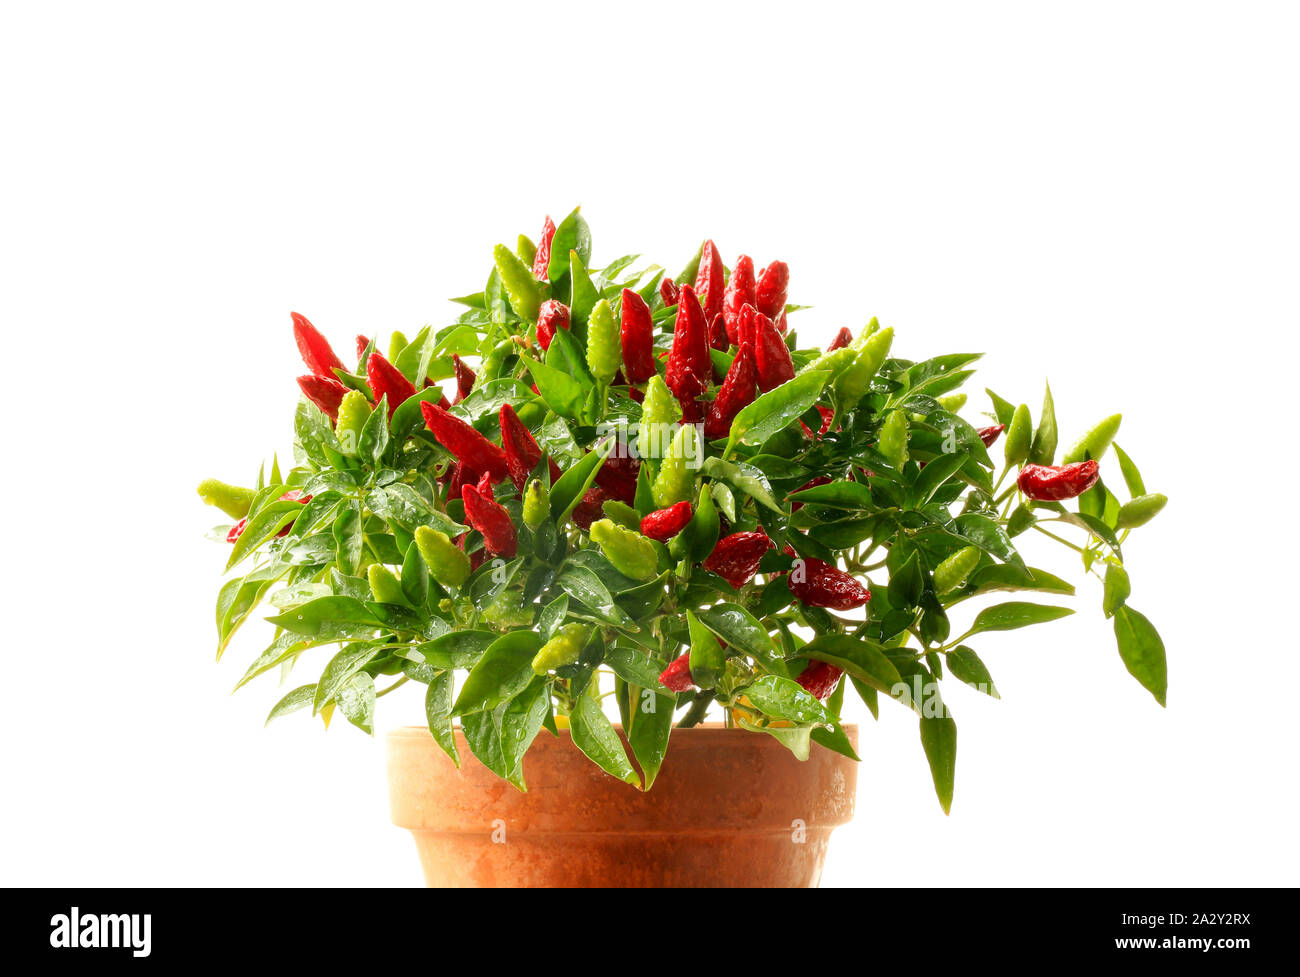 Zierpflanzen chili Pflanze im Topf auf einem weissem Hintergrund  Stockfotografie - Alamy